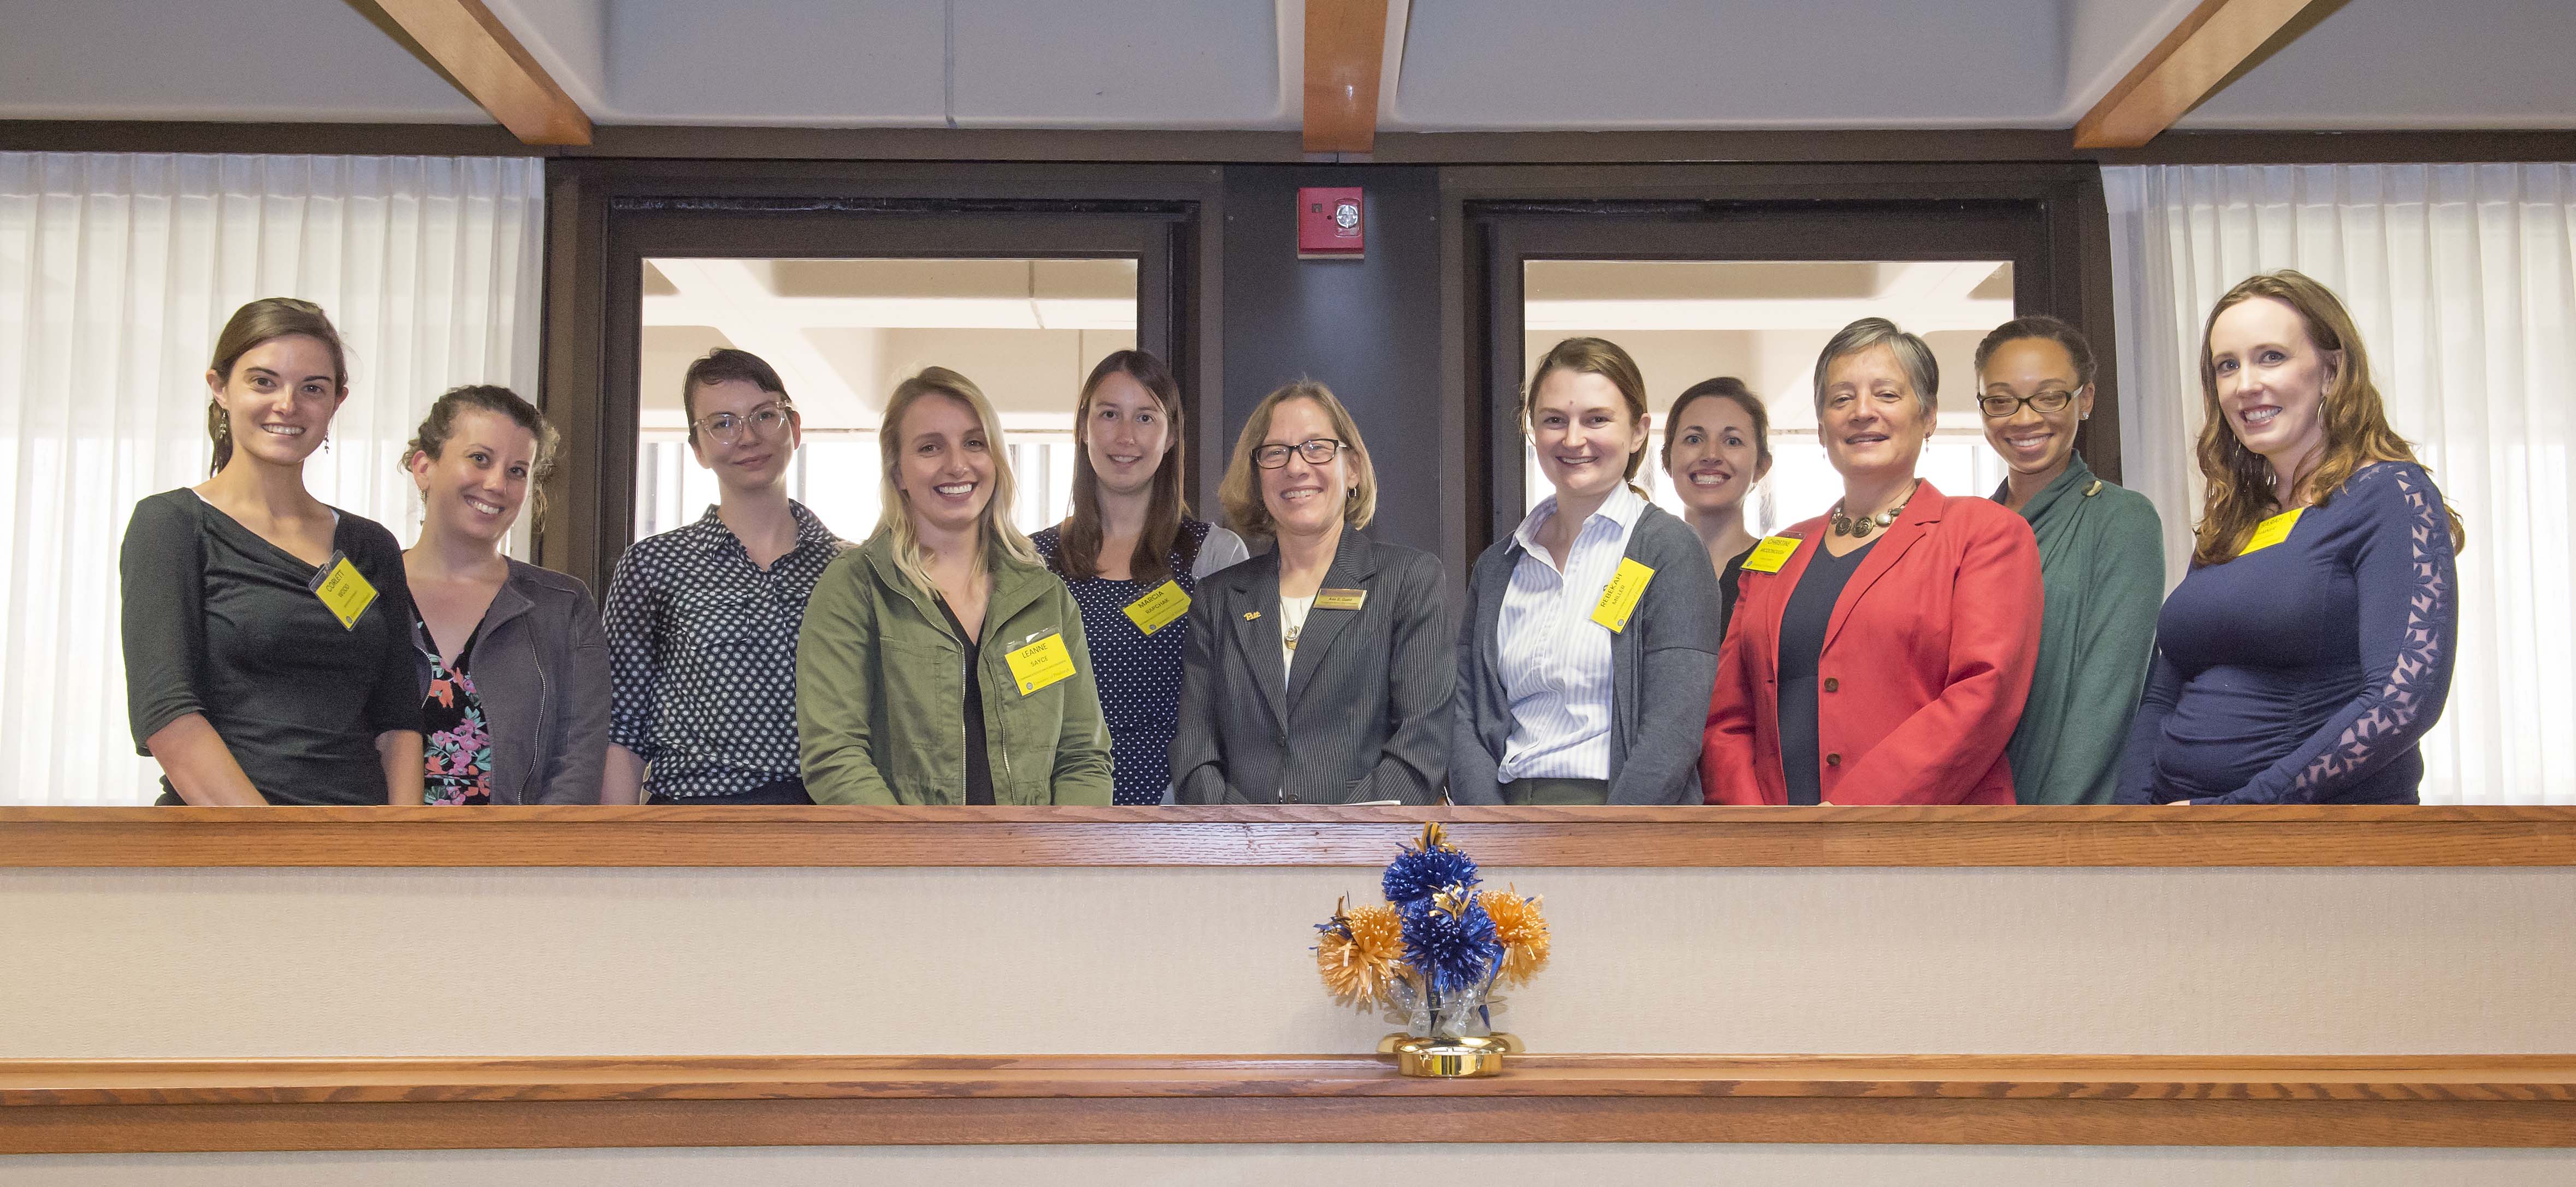 New women faculty at Pitt